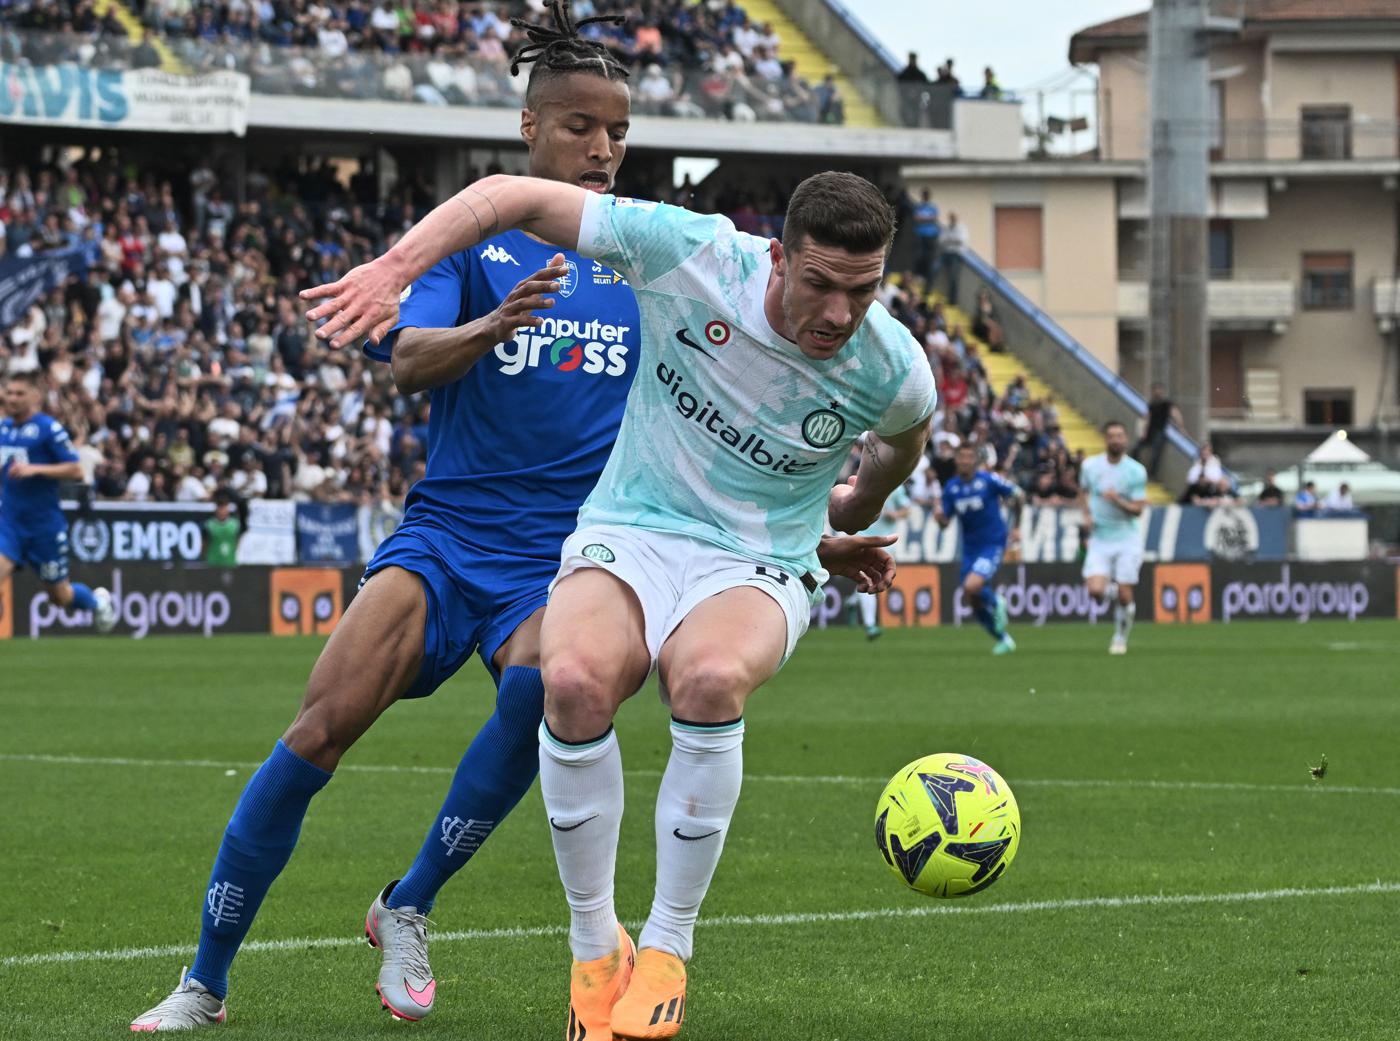 Empoli gegen Inter - 0-3. Italienische Meisterschaft, 31. Runde. Spielbericht, Statistik.